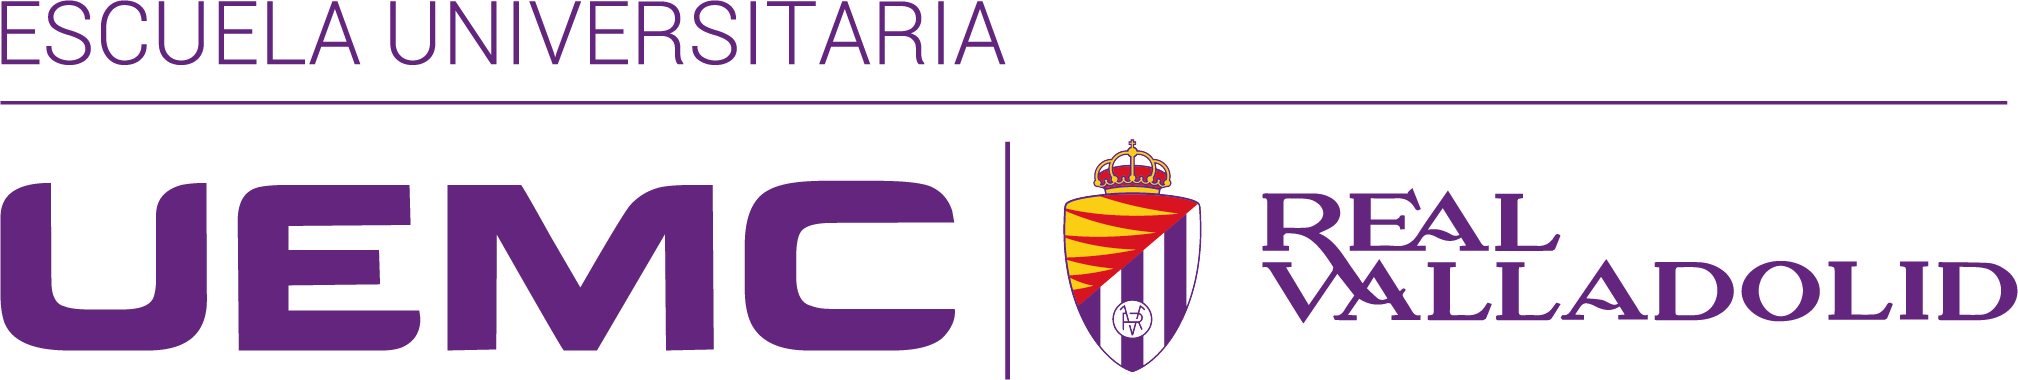 Logos Escuela UEMC Real Valladolid Color Web